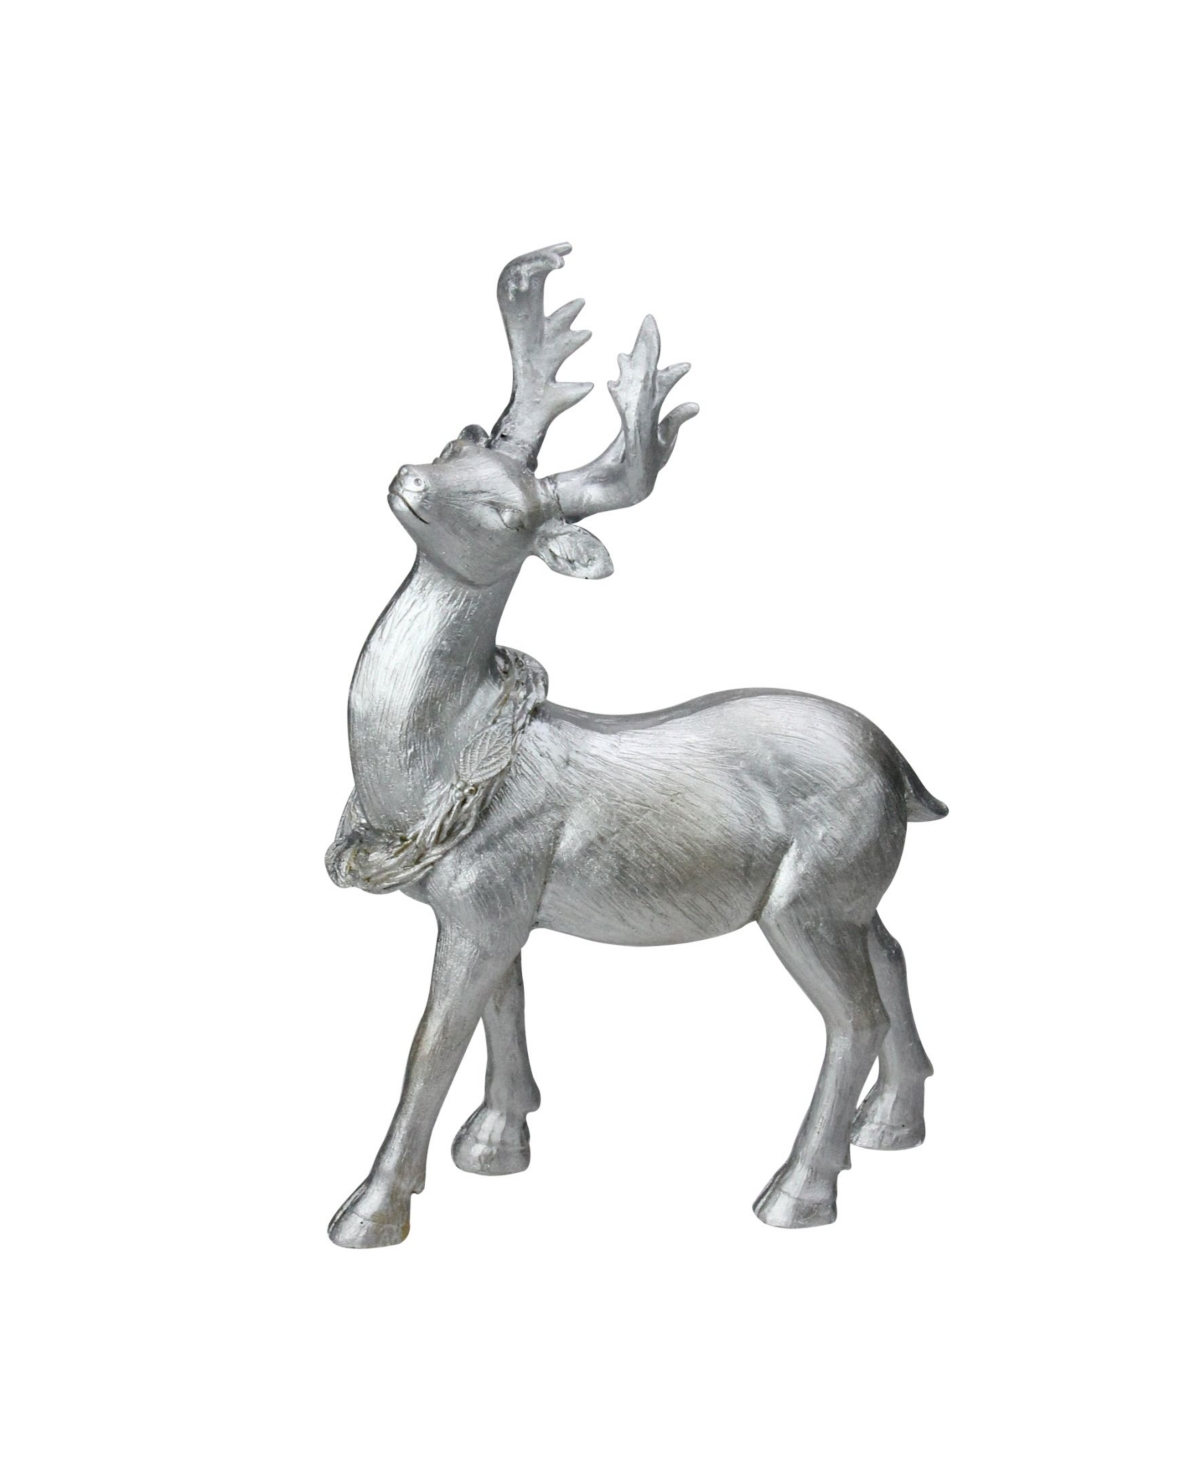 10.5" Elegant Silver Christmas Table Top Reindeer Figure - Silver